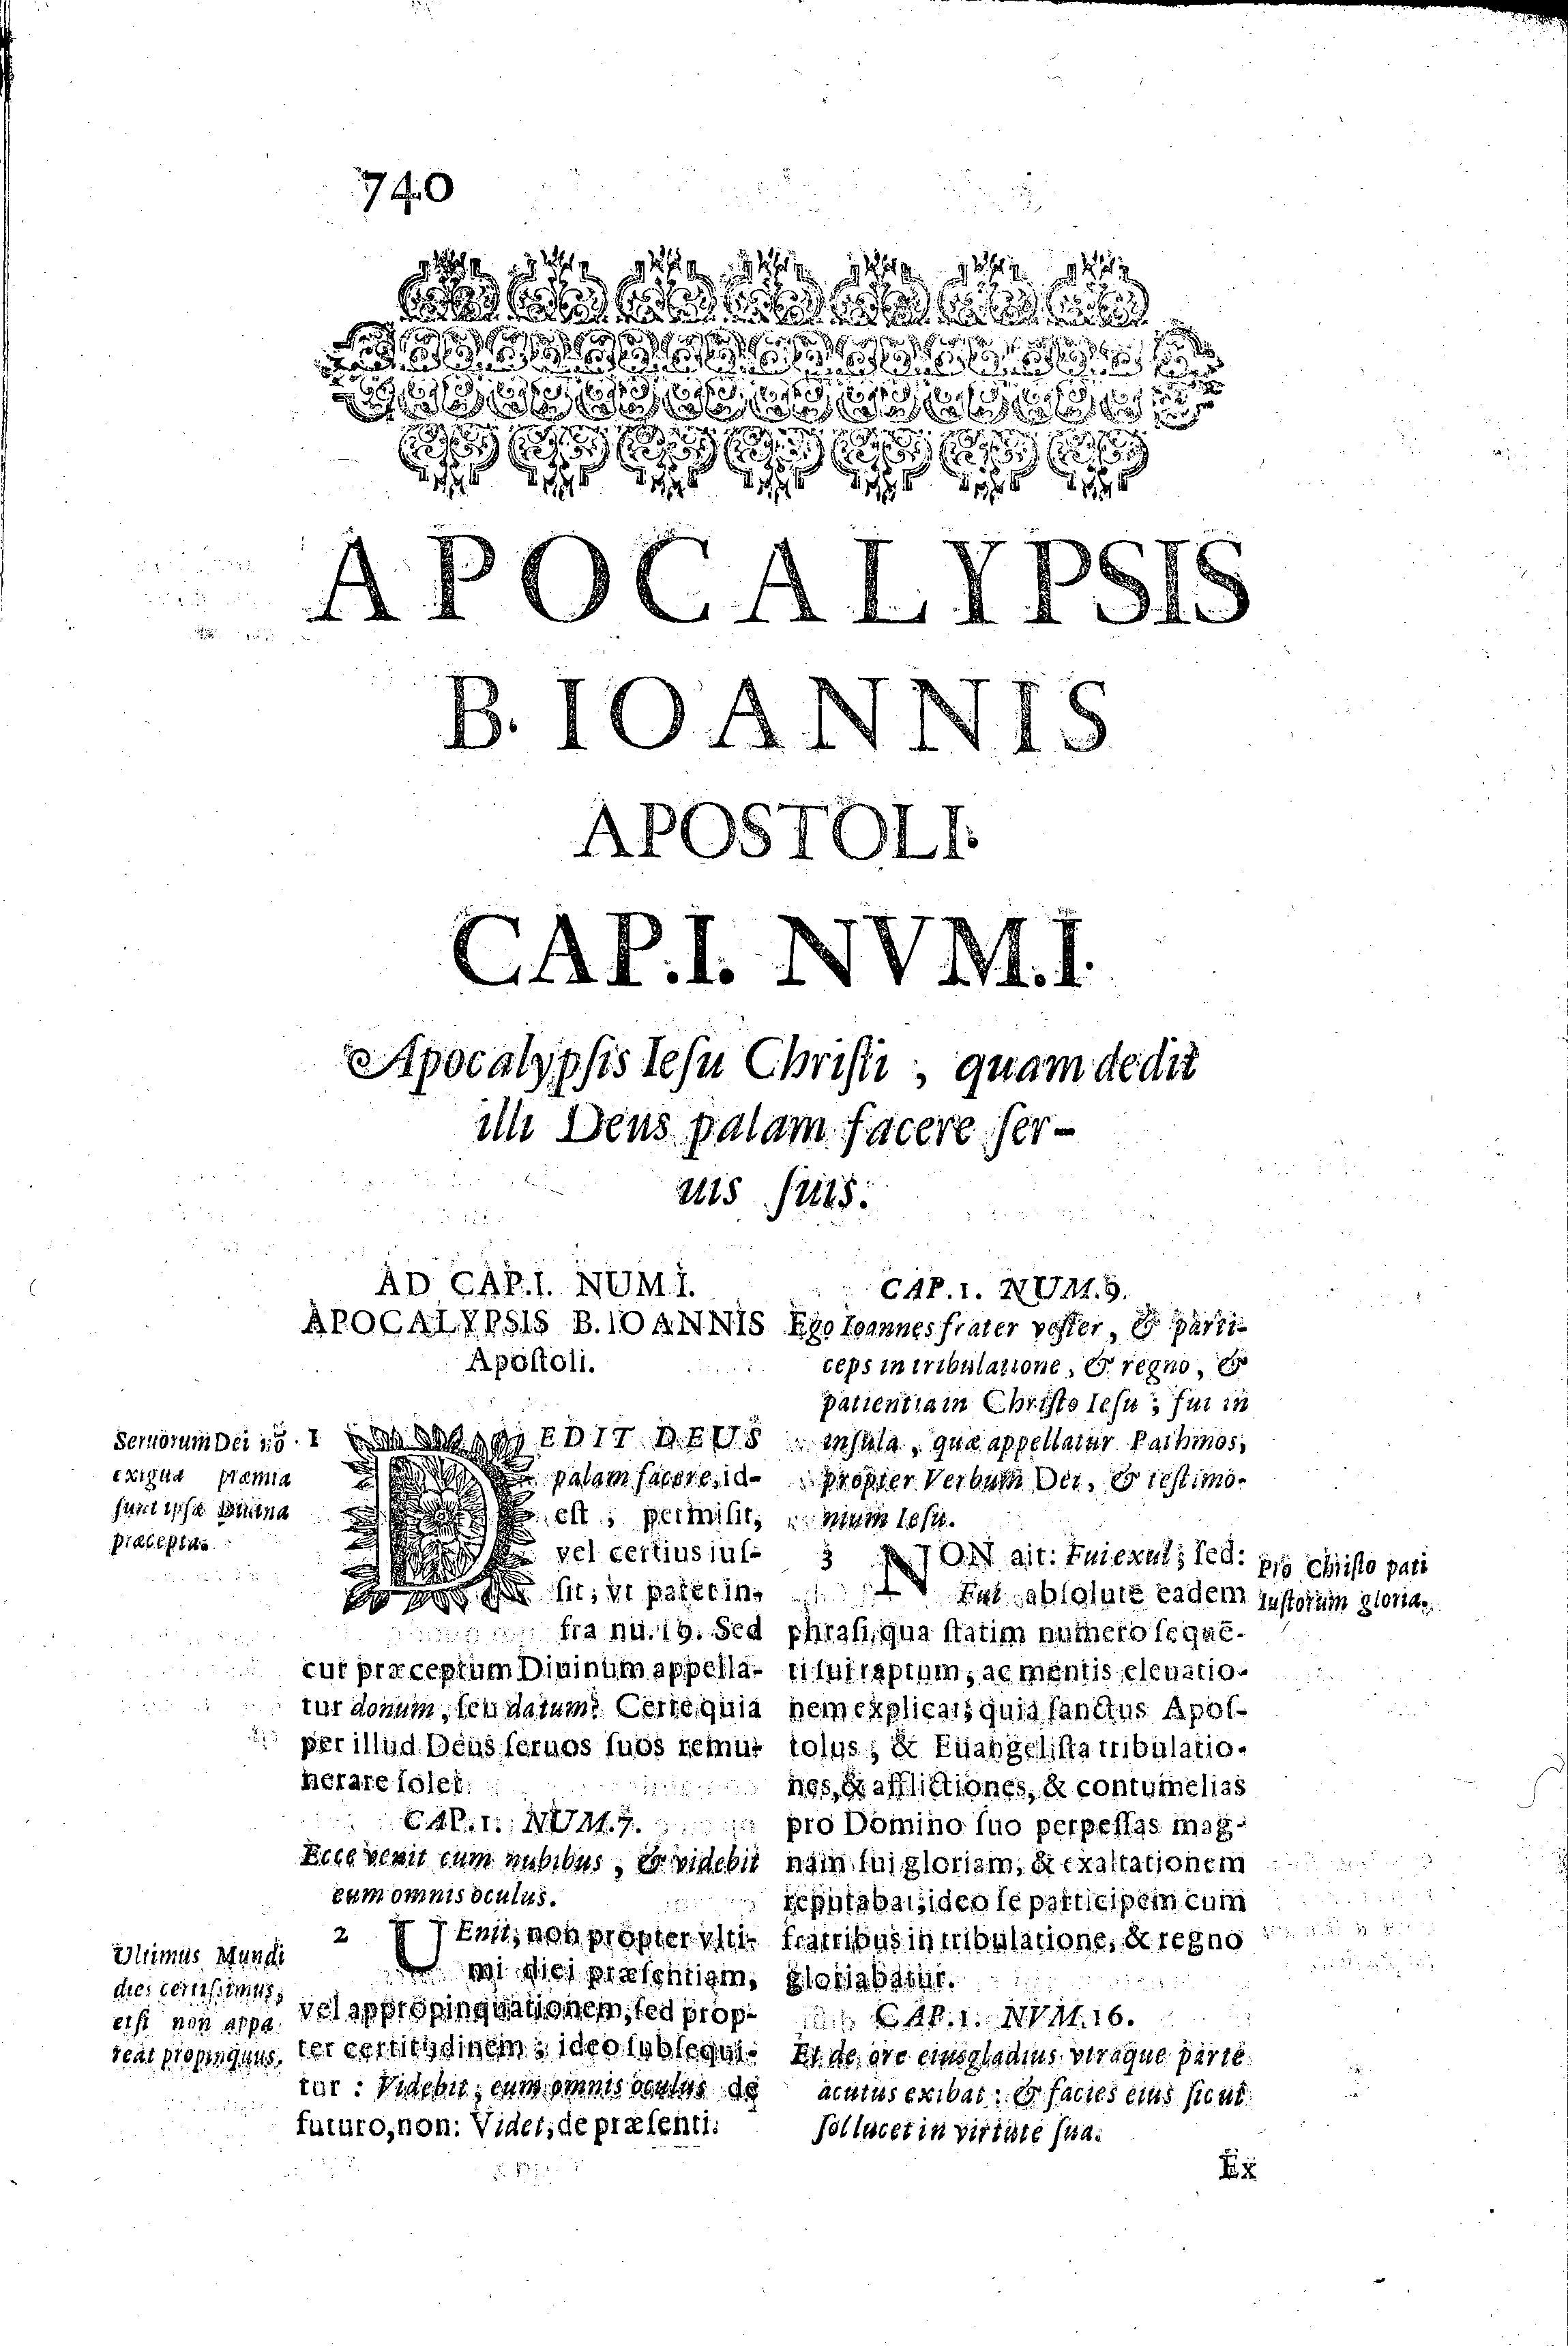 Apocalypsis B. Ioannis apostoli. Cap.I. Nvm.I. Apocalypsis Iesu Christi